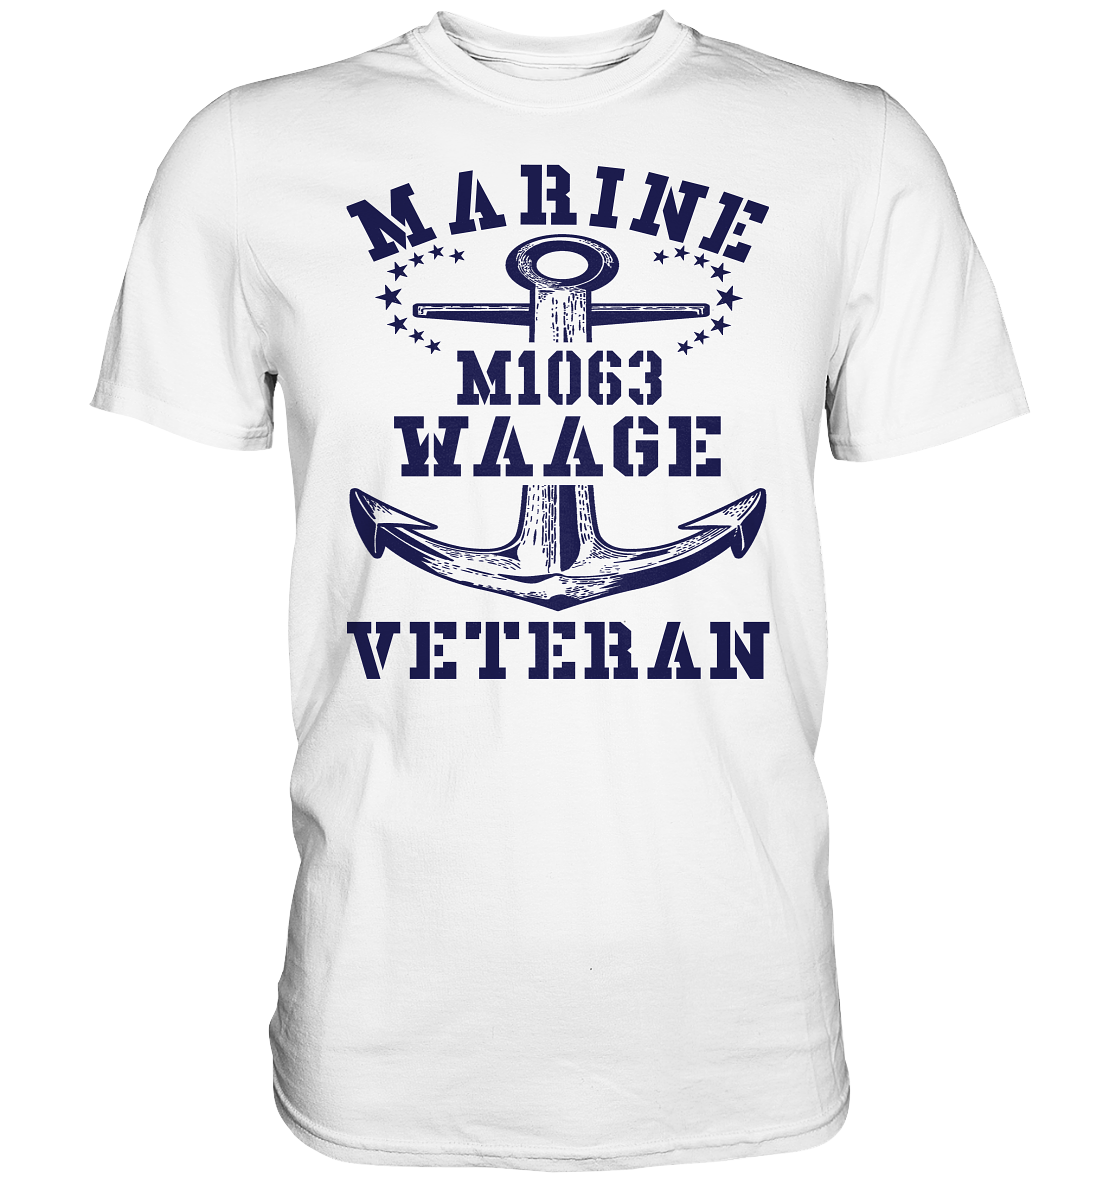 SM-Boot M1063 WAAGE Marine Veteran - Premium Shirt